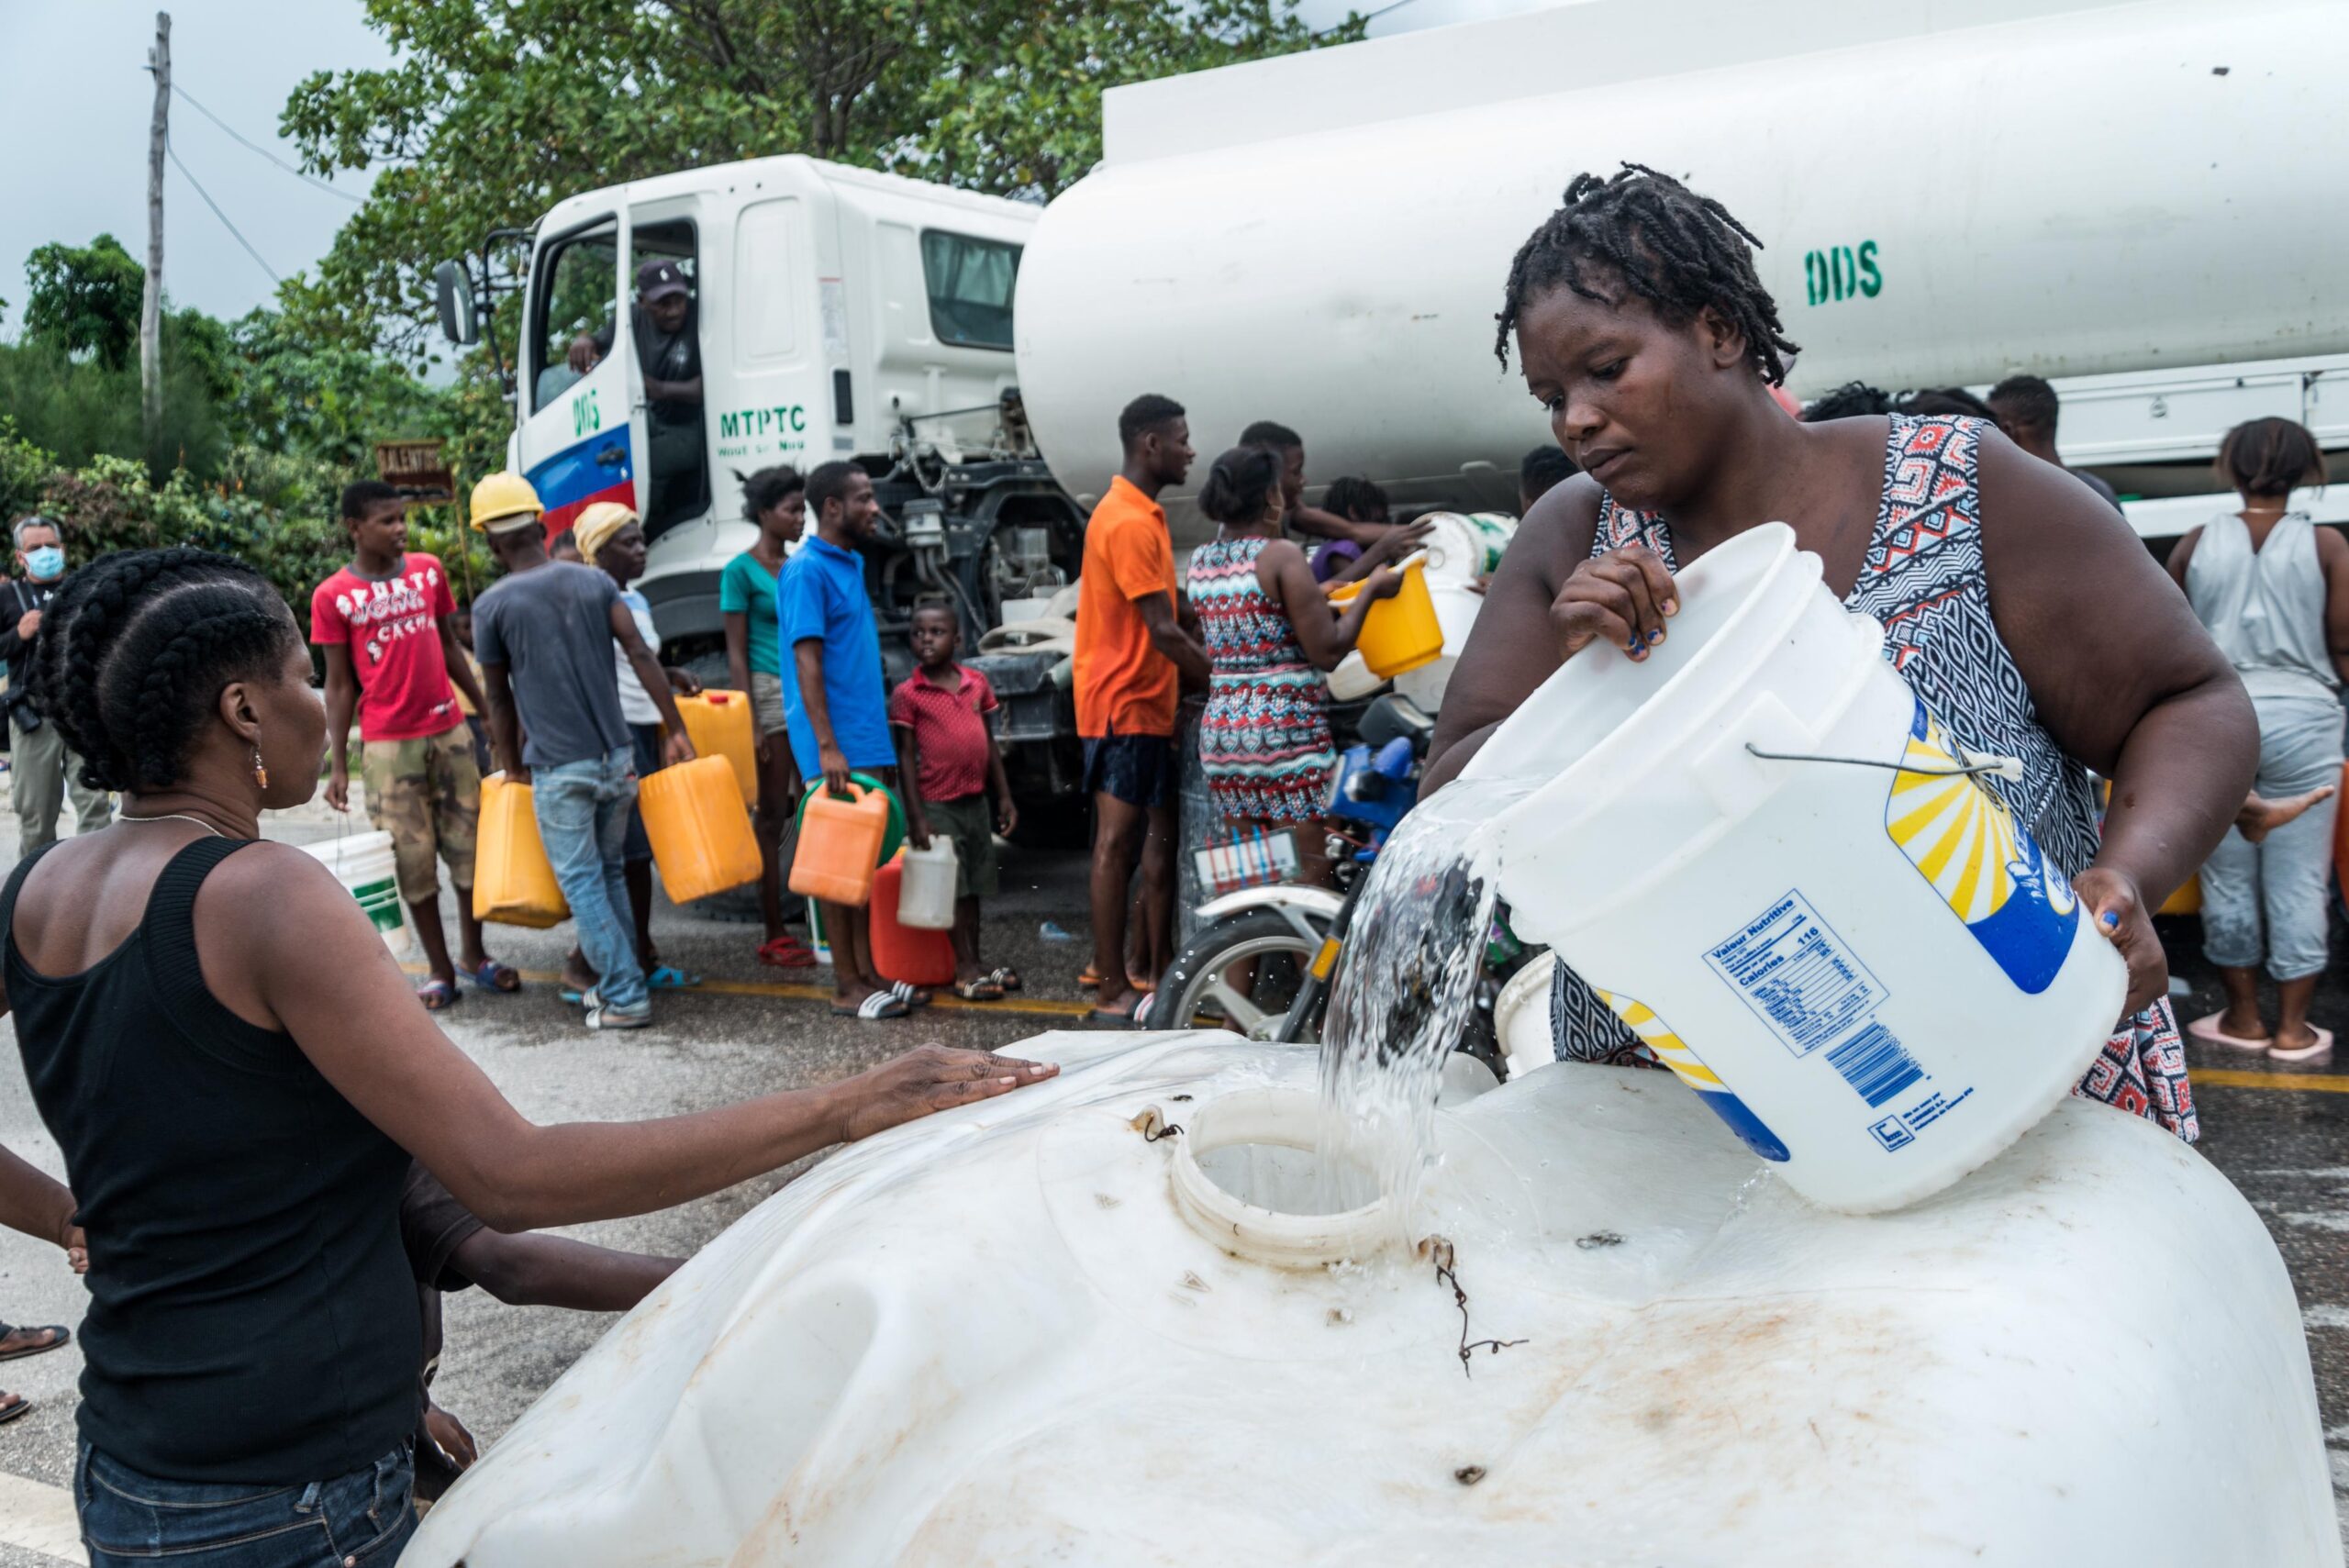 L'accès à l'eau potable est crucial pour les sinistré en Haïti. Dans une première phase, les partenaires du Secours populaire en ont distribué, avec son appui. Désormais, L'association finance la fourniture de 1000 filtres à eau.